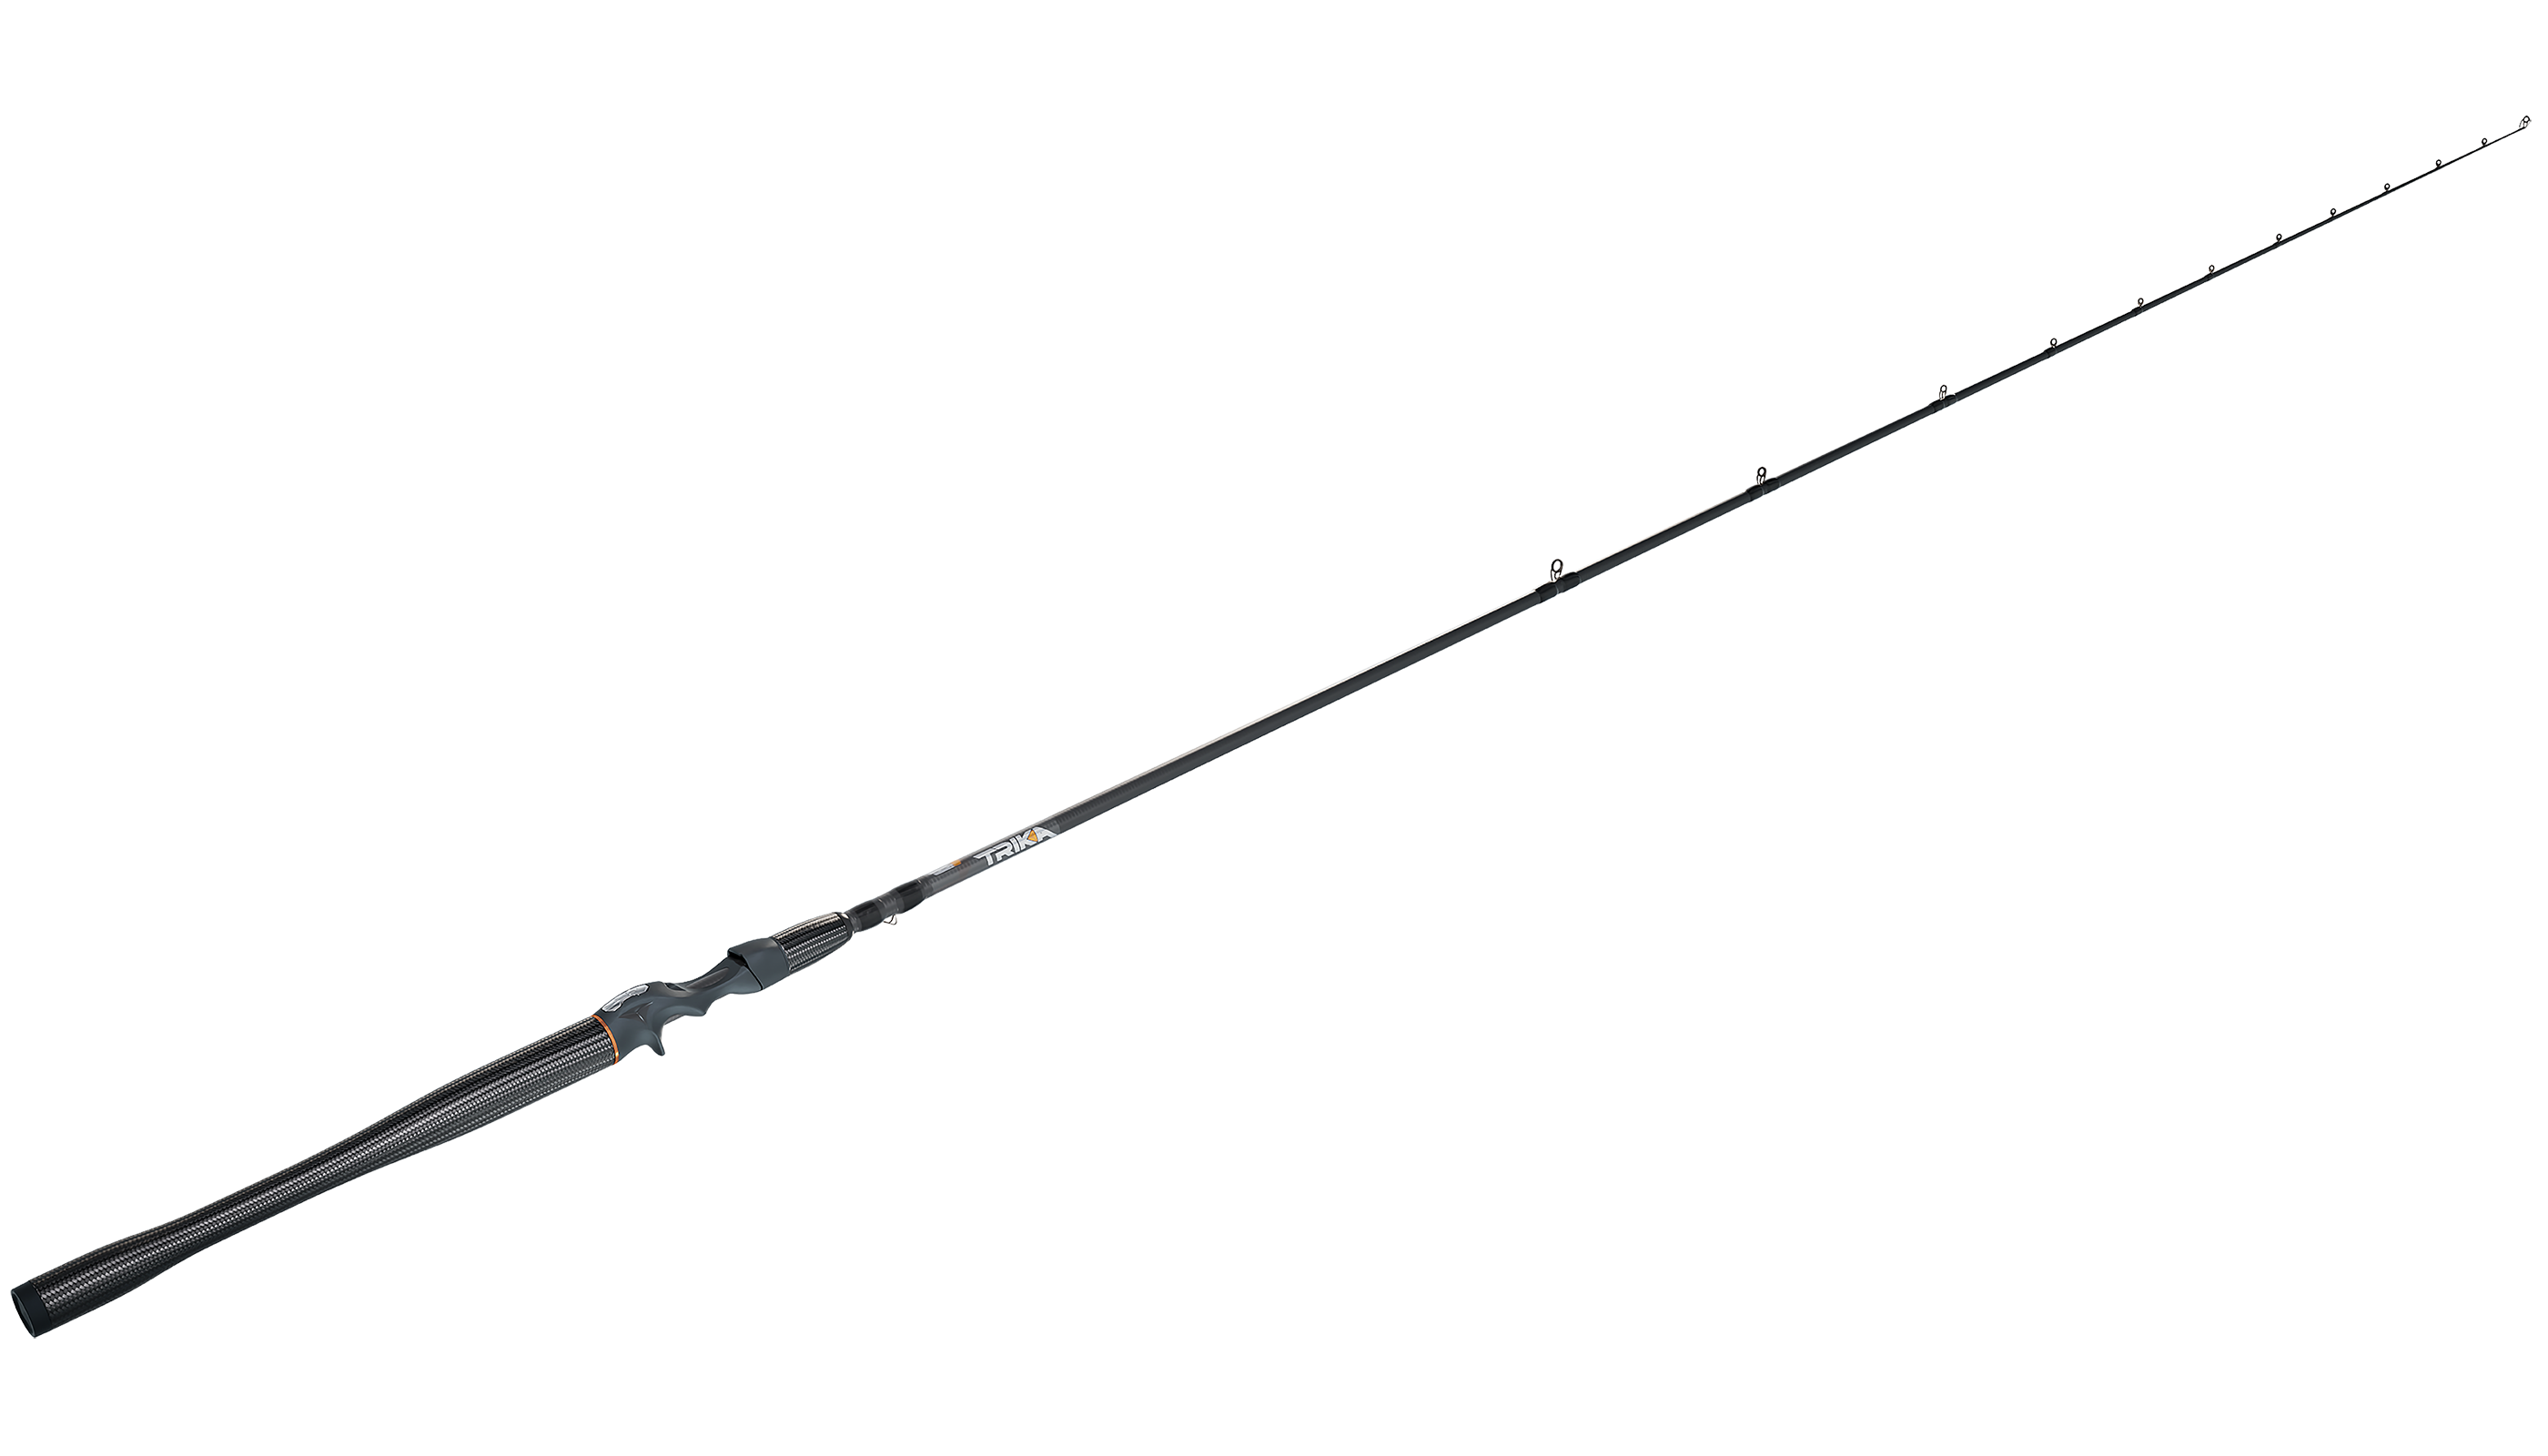 My New Trika Fishing Rod #trikarods #trikafishing #fishingfun